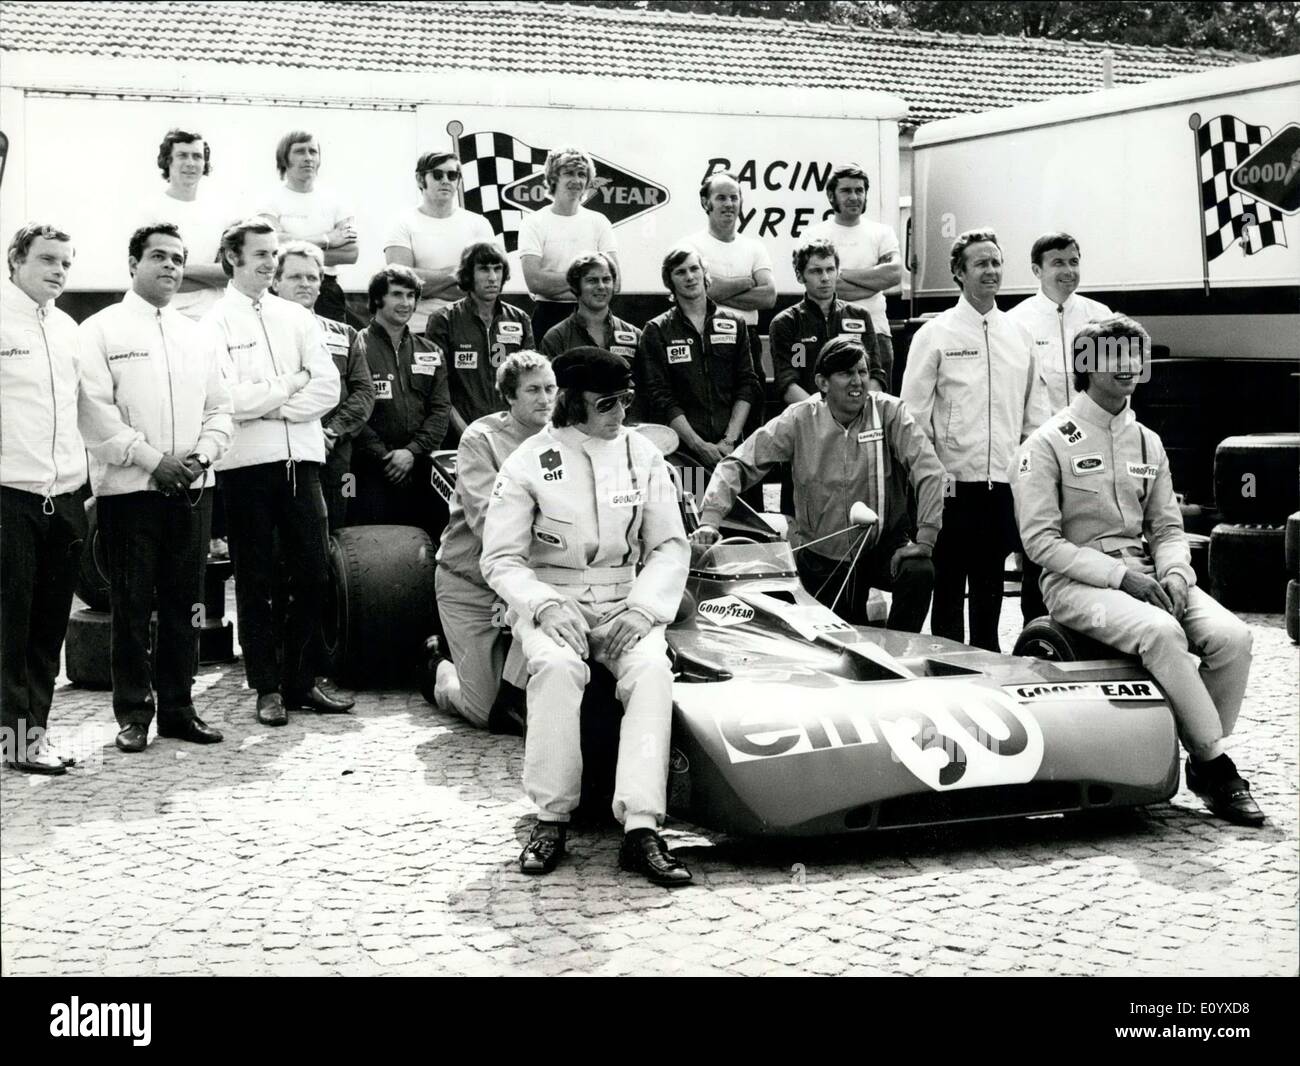 Sett. 17, 1971 - Tyrrell-Ford come campione del mondo. L'immagine a sinistra mostra il campione del mondo Jackie Stewart, giusto il conducente Francois Cevert tra loro il costruttore della vettura, il sig. Tyrrell e dietro la meccanica del Ford racing team. Foto Stock